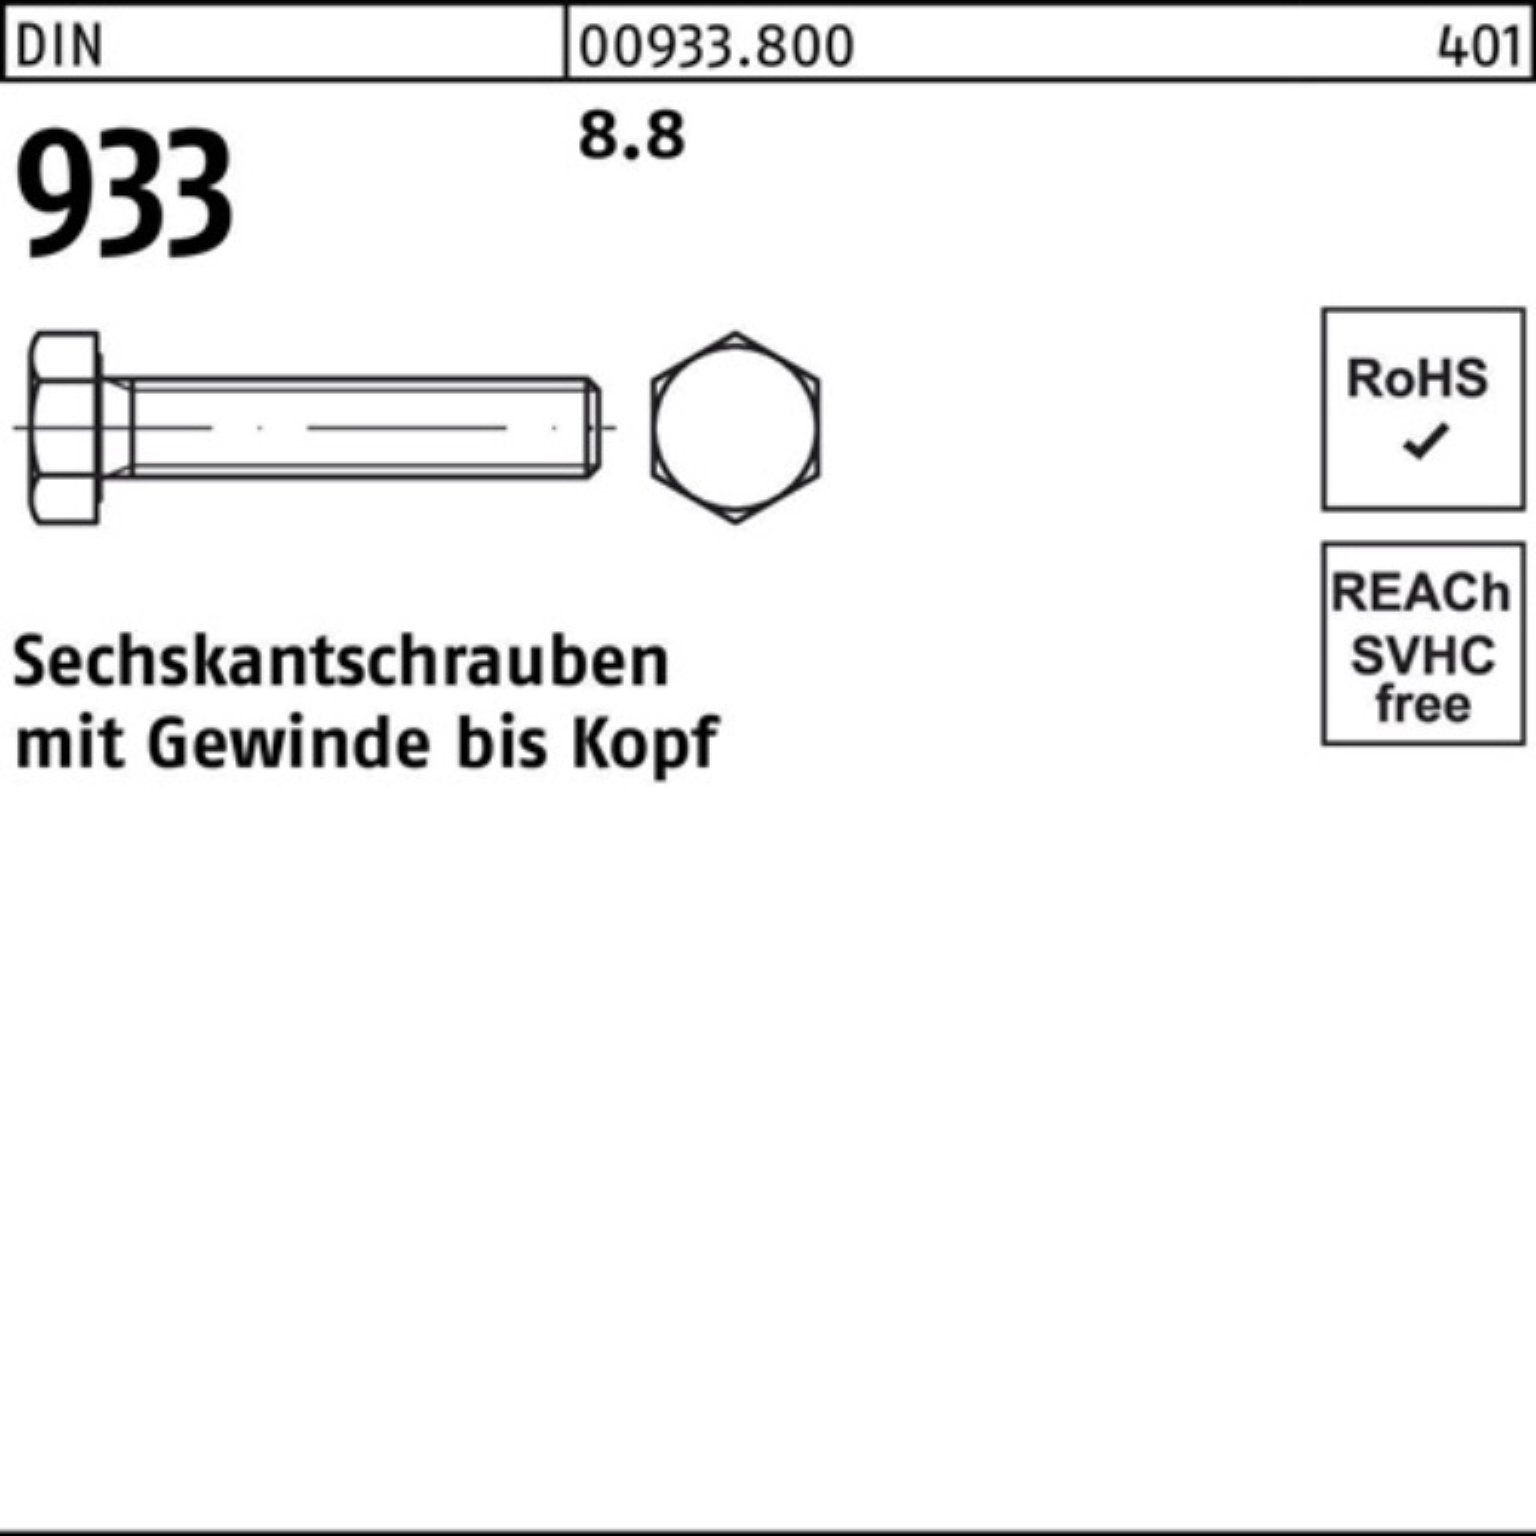 Reyher Sechskantschraube 1 Sechskantschraube 8.8 Stück 933 DIN 933 DIN 240 M30x VG 100er Pack